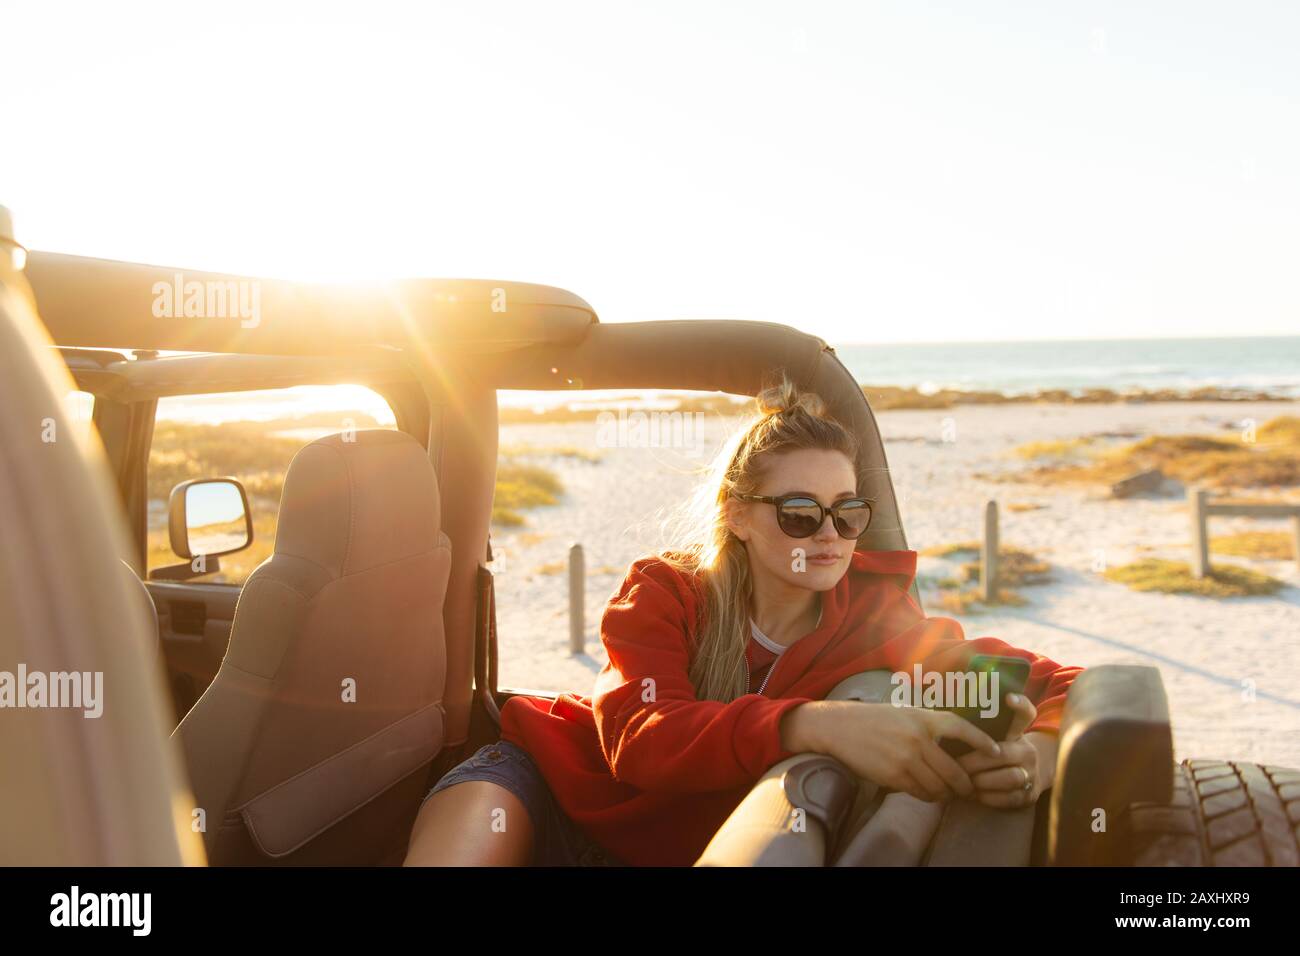 Vista frontale di una donna caucasica all'interno di un'auto a cielo aperto, che si affaccia durante il tramonto. Weekend vacanza in spiaggia, stile di vita e tempo libero. Foto Stock